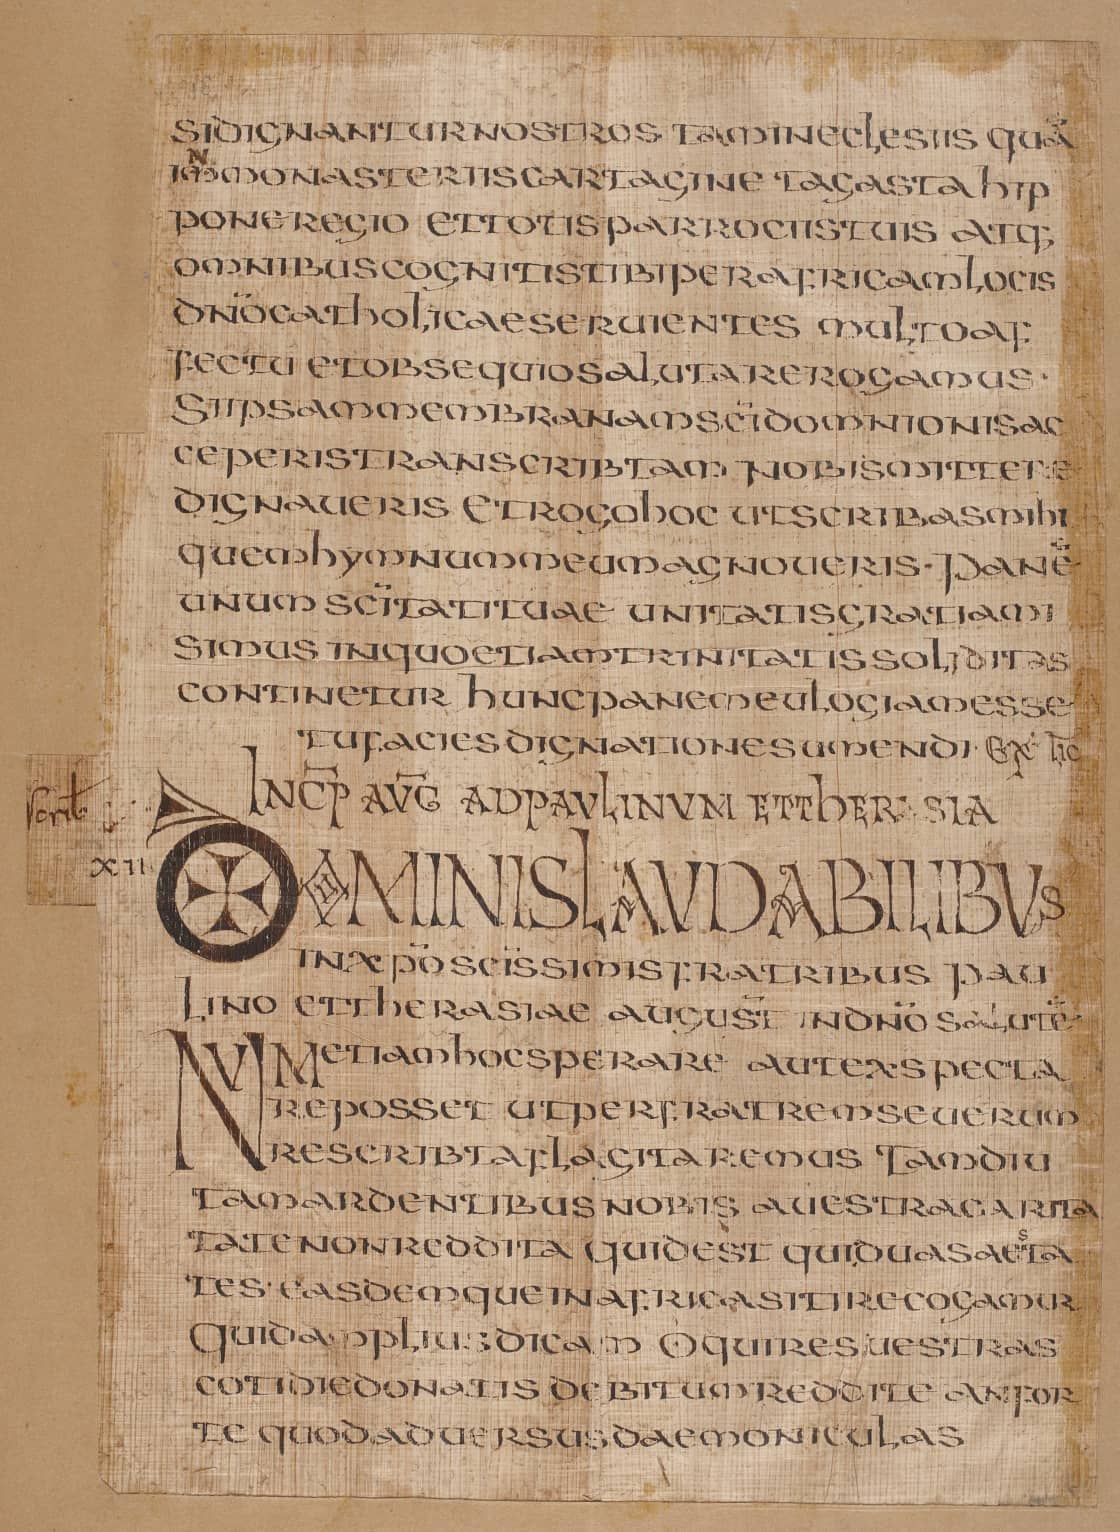 [sine loco], codices restituti, Cod. 1 (Codex Florus dispersus), f. 8v – Augustinus Hipponensis, Epistolae et Sermones (Codex restitutus)